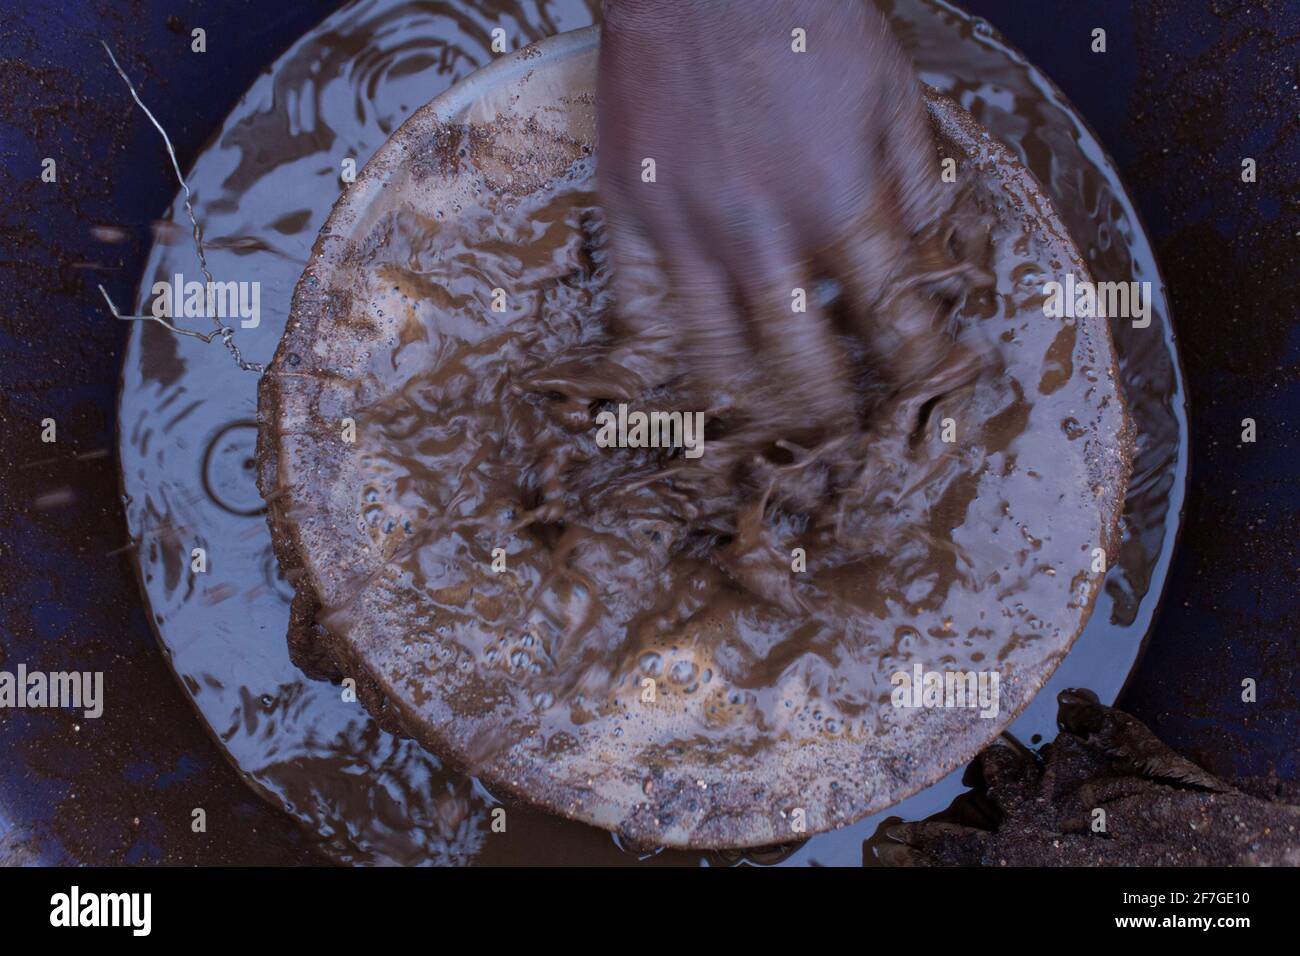 Ein illegaler Goldminer, sobald die Tücher voller Goldstaub sind, wäscht sie am 2. September 2020 vorsichtig in einem Eimer in den Straßen des Townships in Xawela, Carletonville bei Johannesburg, Südafrika. (Foto von Manash das/Sipa USA) Quelle: SIPA USA/Alamy Live News Stockfoto